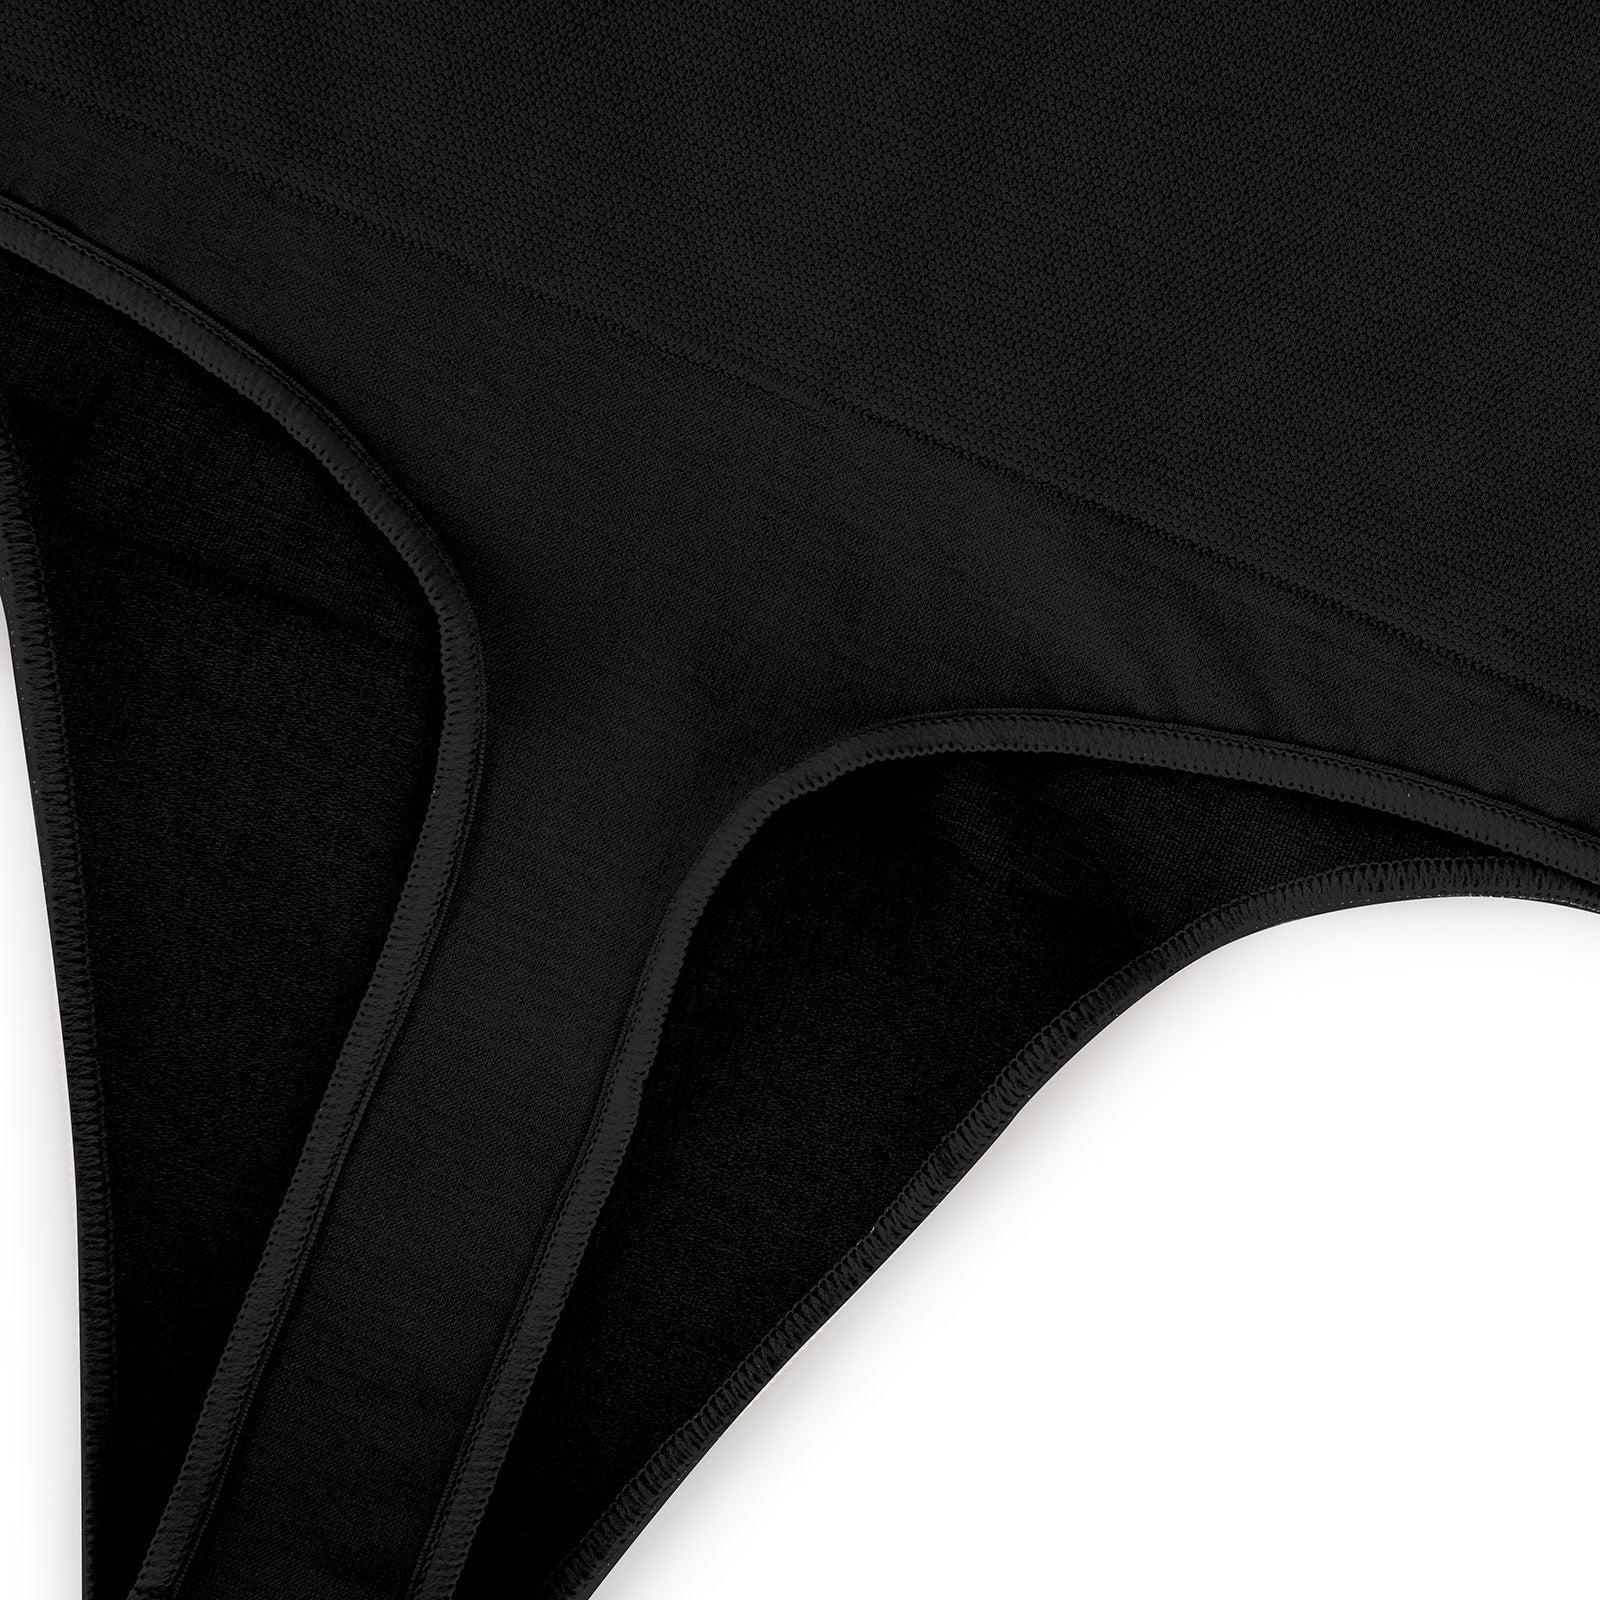 Tummy Control Shaping Thong Panties - Black